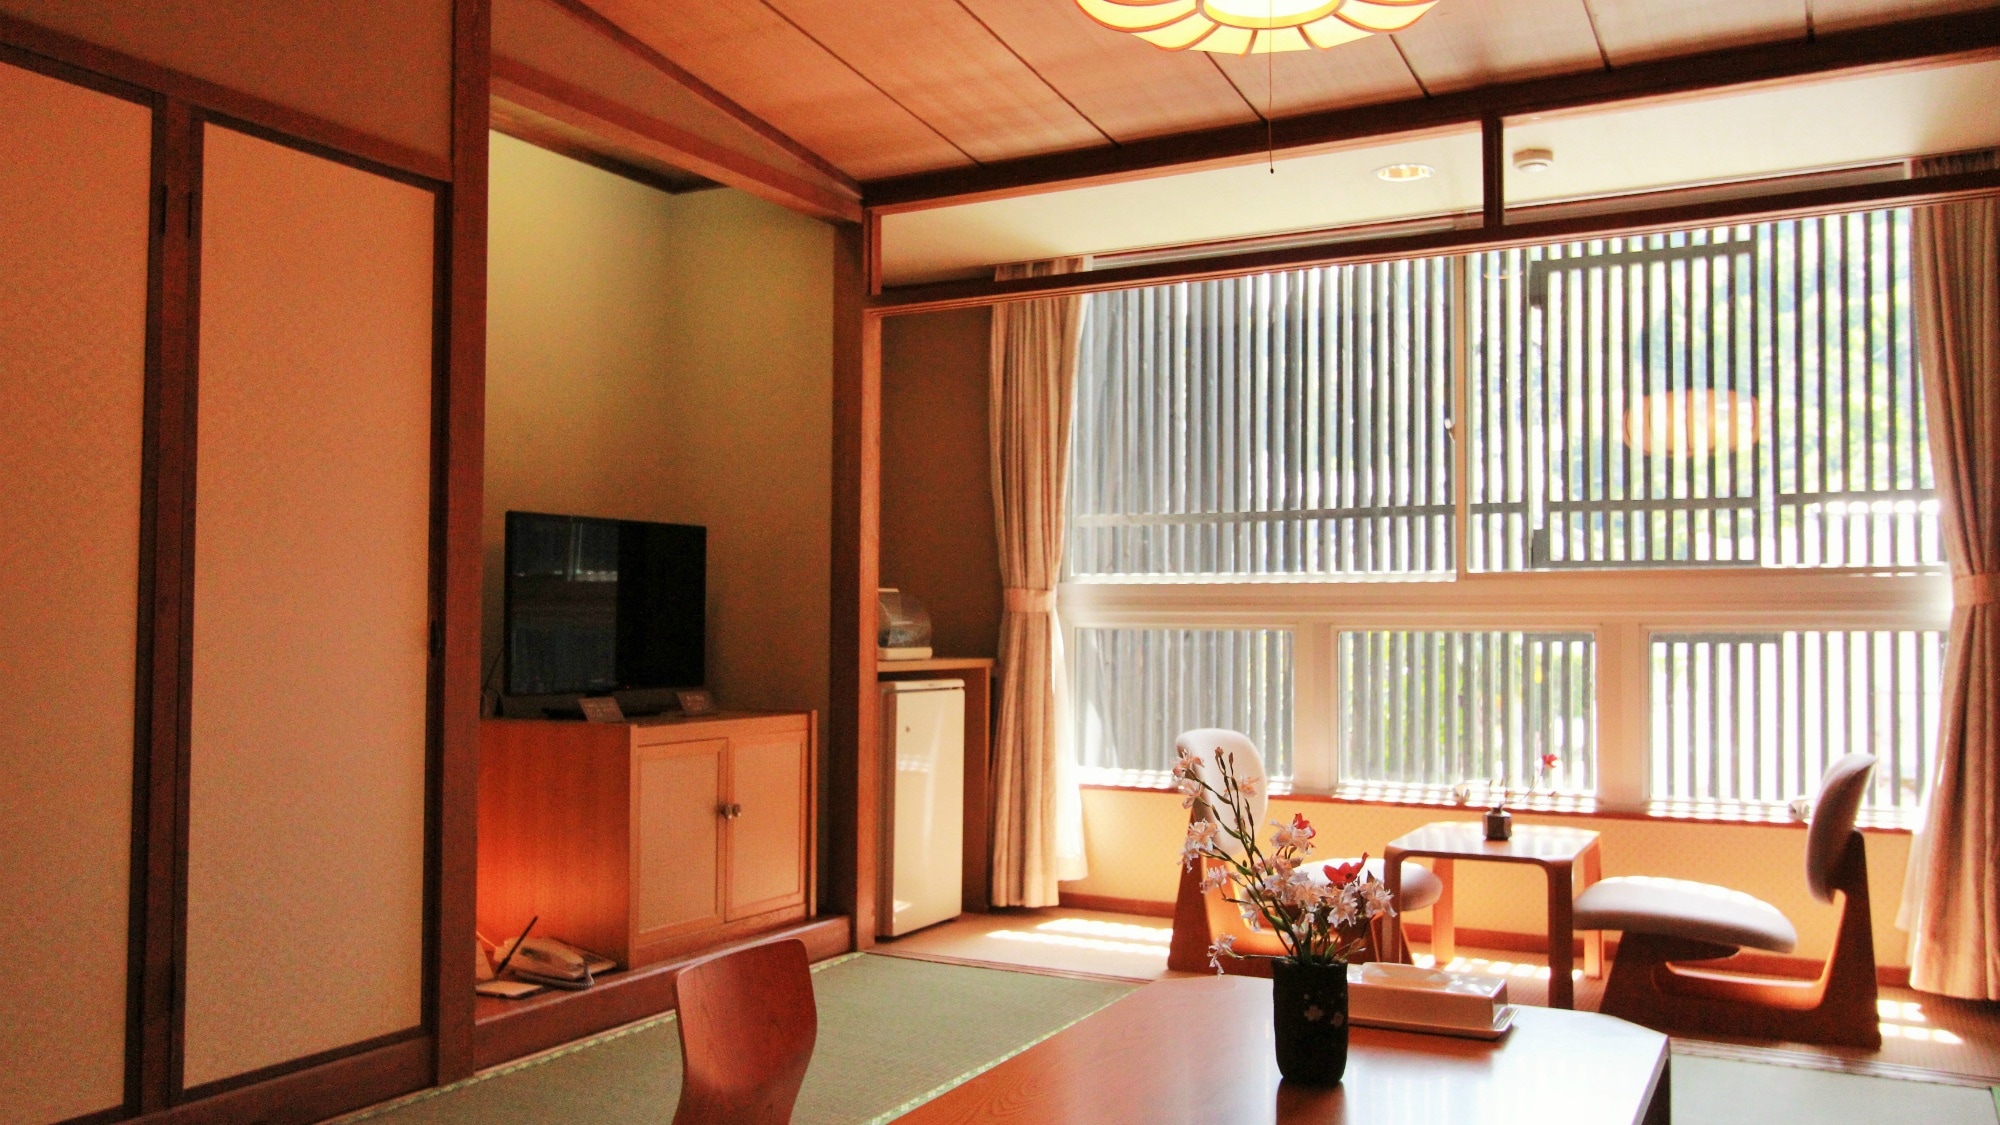 ห้องสไตล์ญี่ปุ่น 8 เสื่อทาทามิ เพลิดเพลินกับพื้นที่ญี่ปุ่น